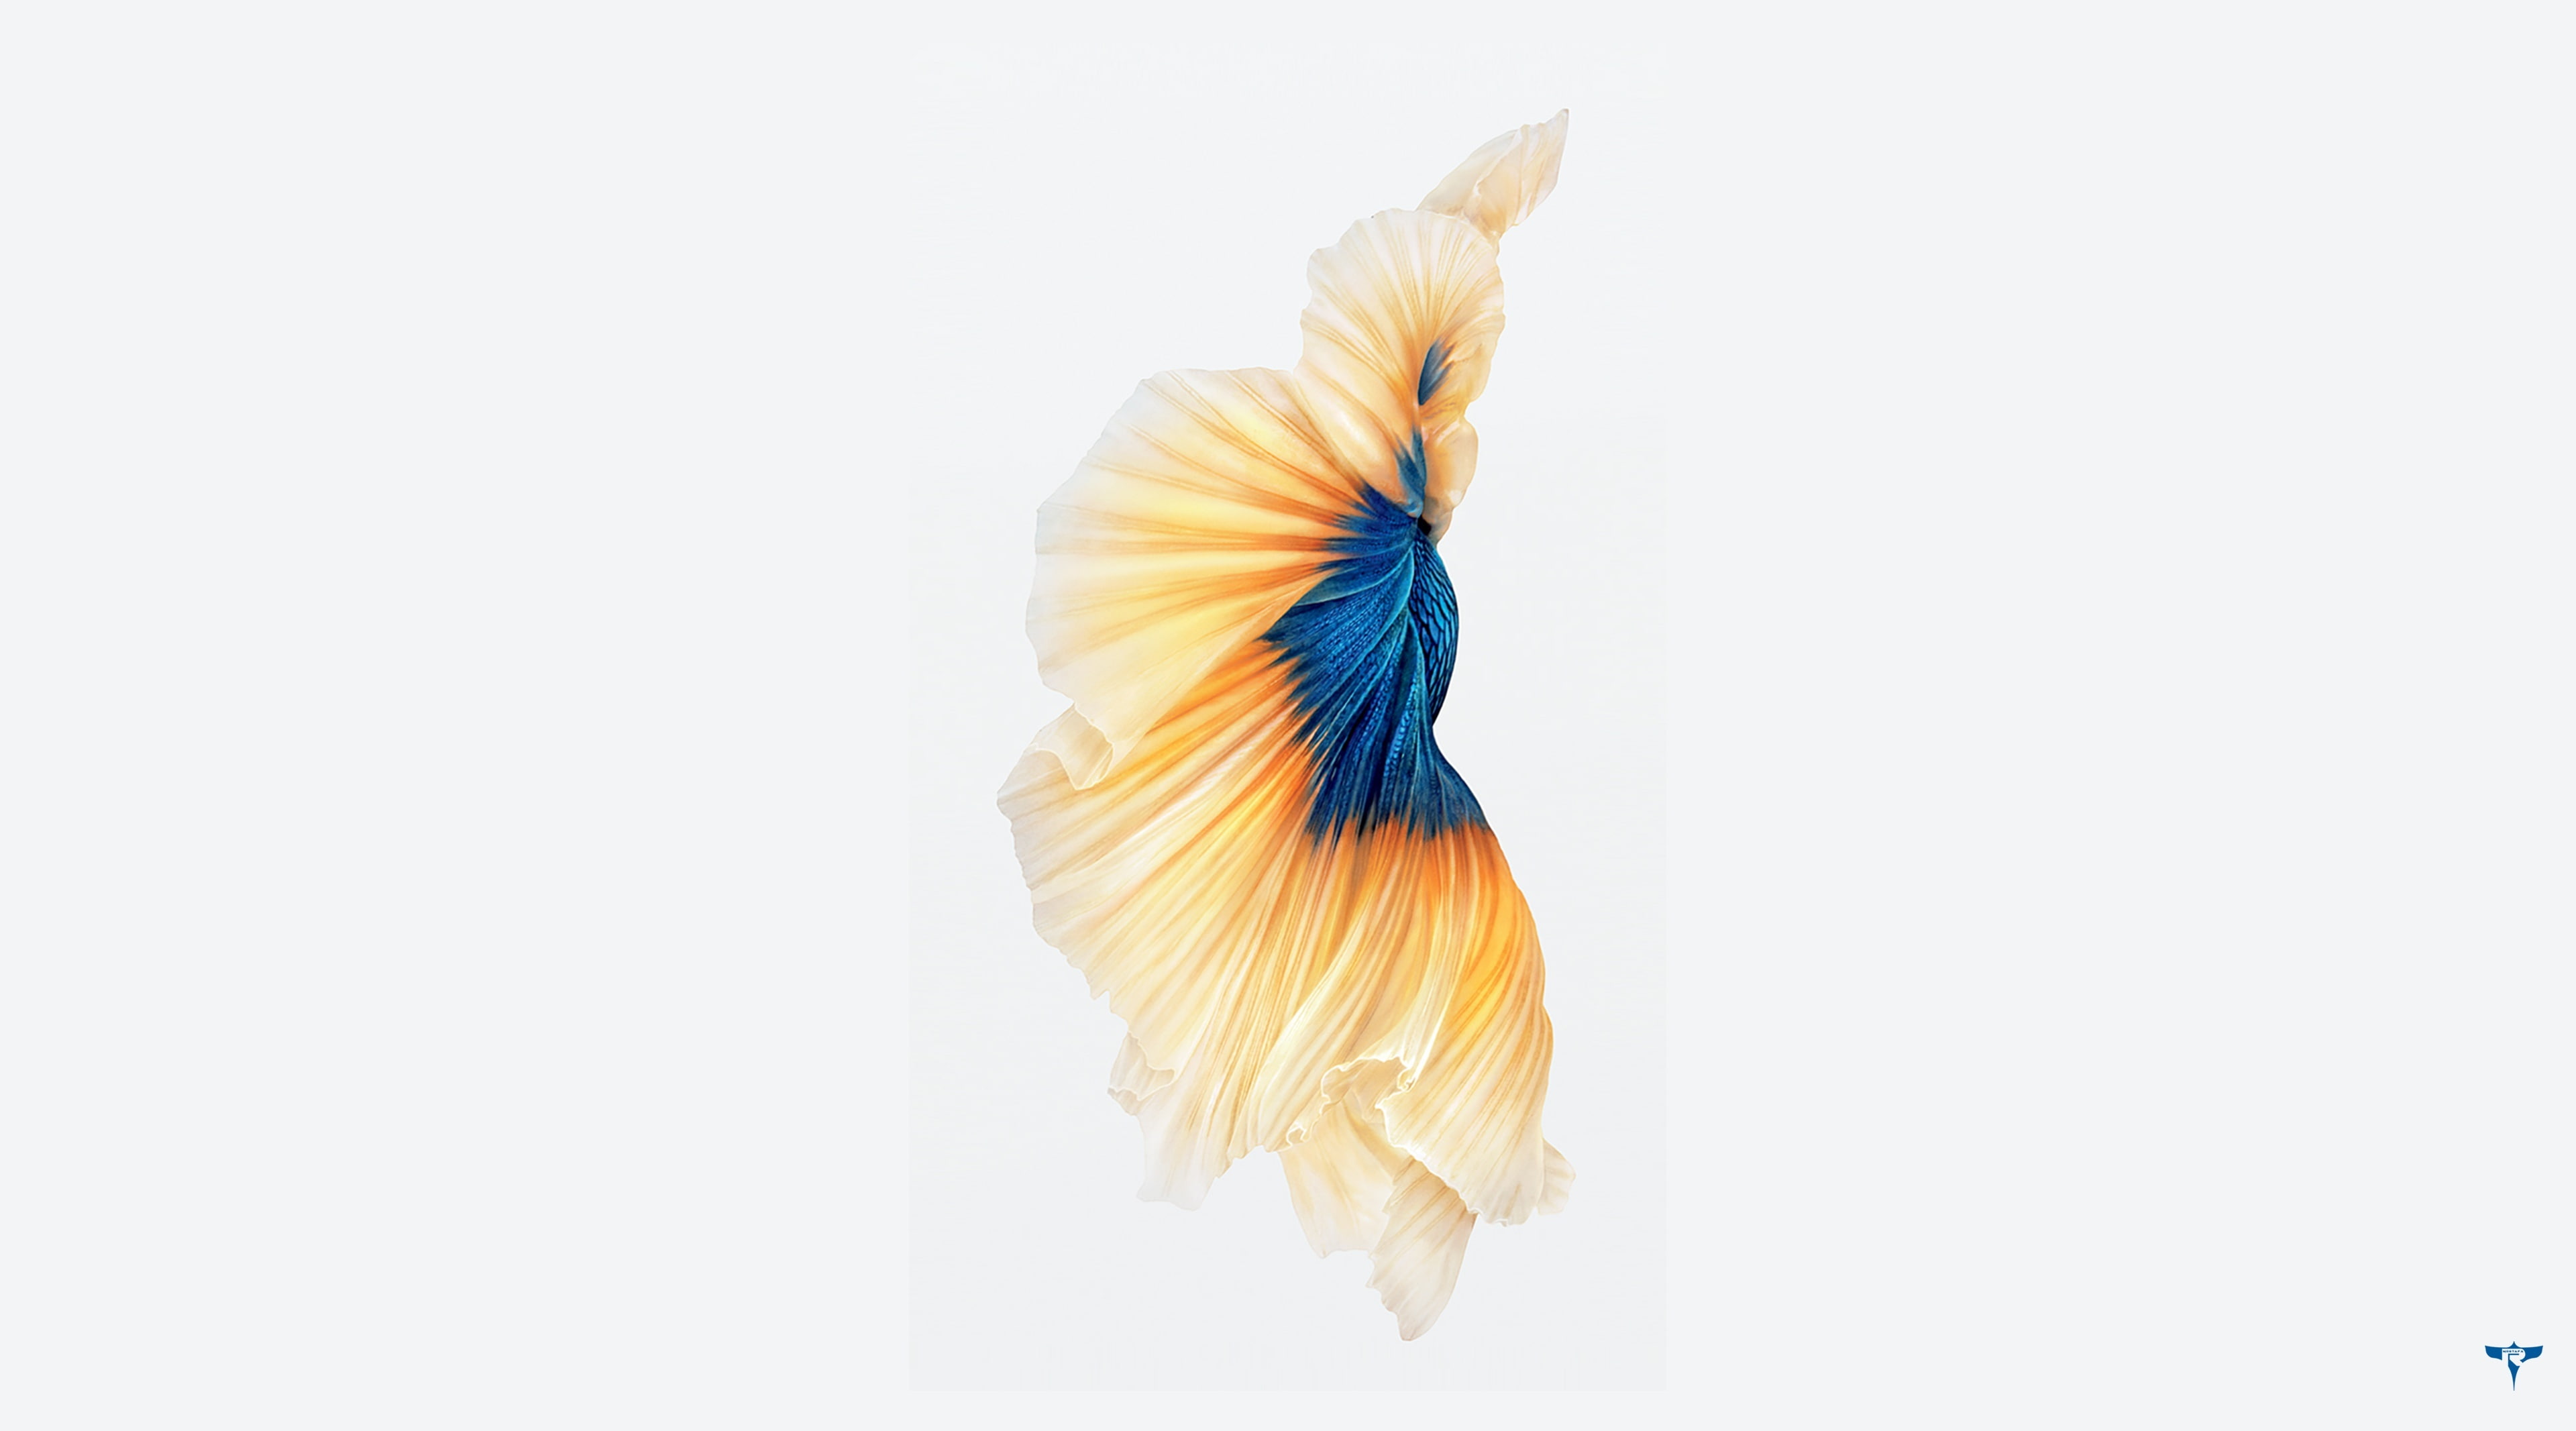 iphone 6s wallpaper,weiß,blau,gelb,türkis,blütenblatt